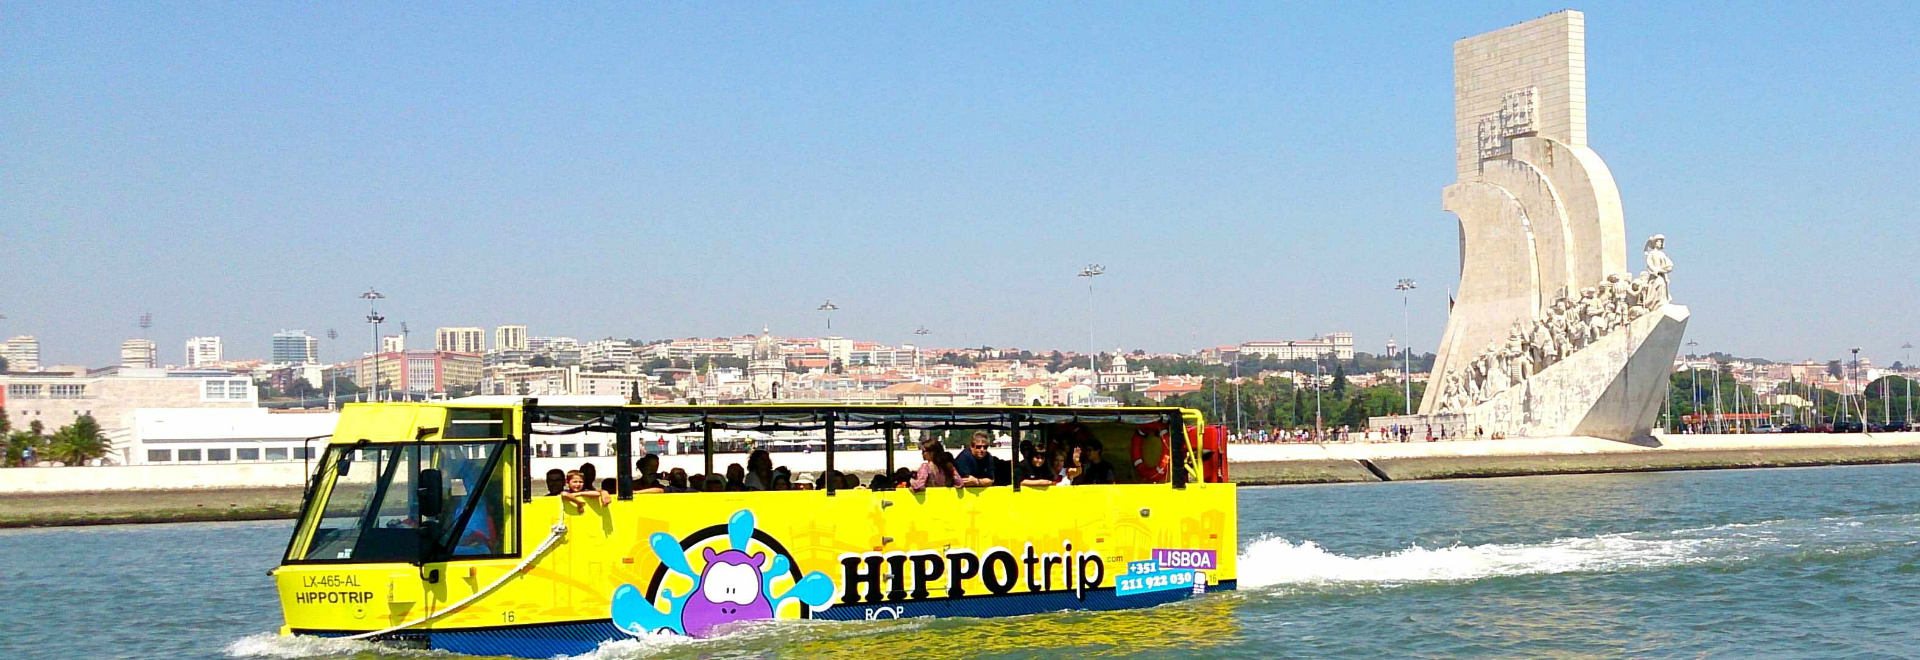 Bus Touristique à Lisbonne 